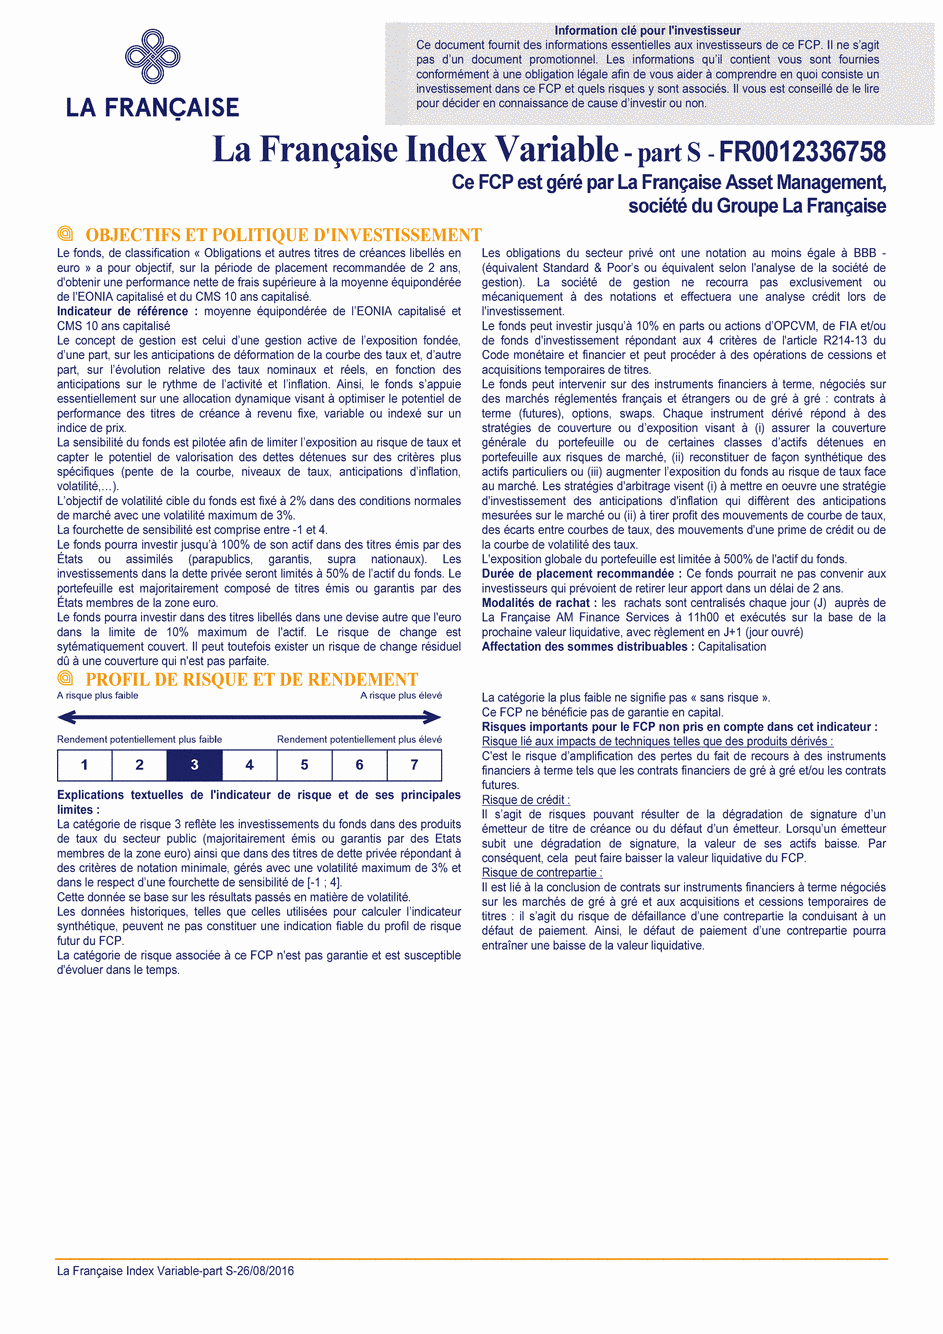 DICI La Française Moderate Multibonds - Part S - 26/08/2016 - Français